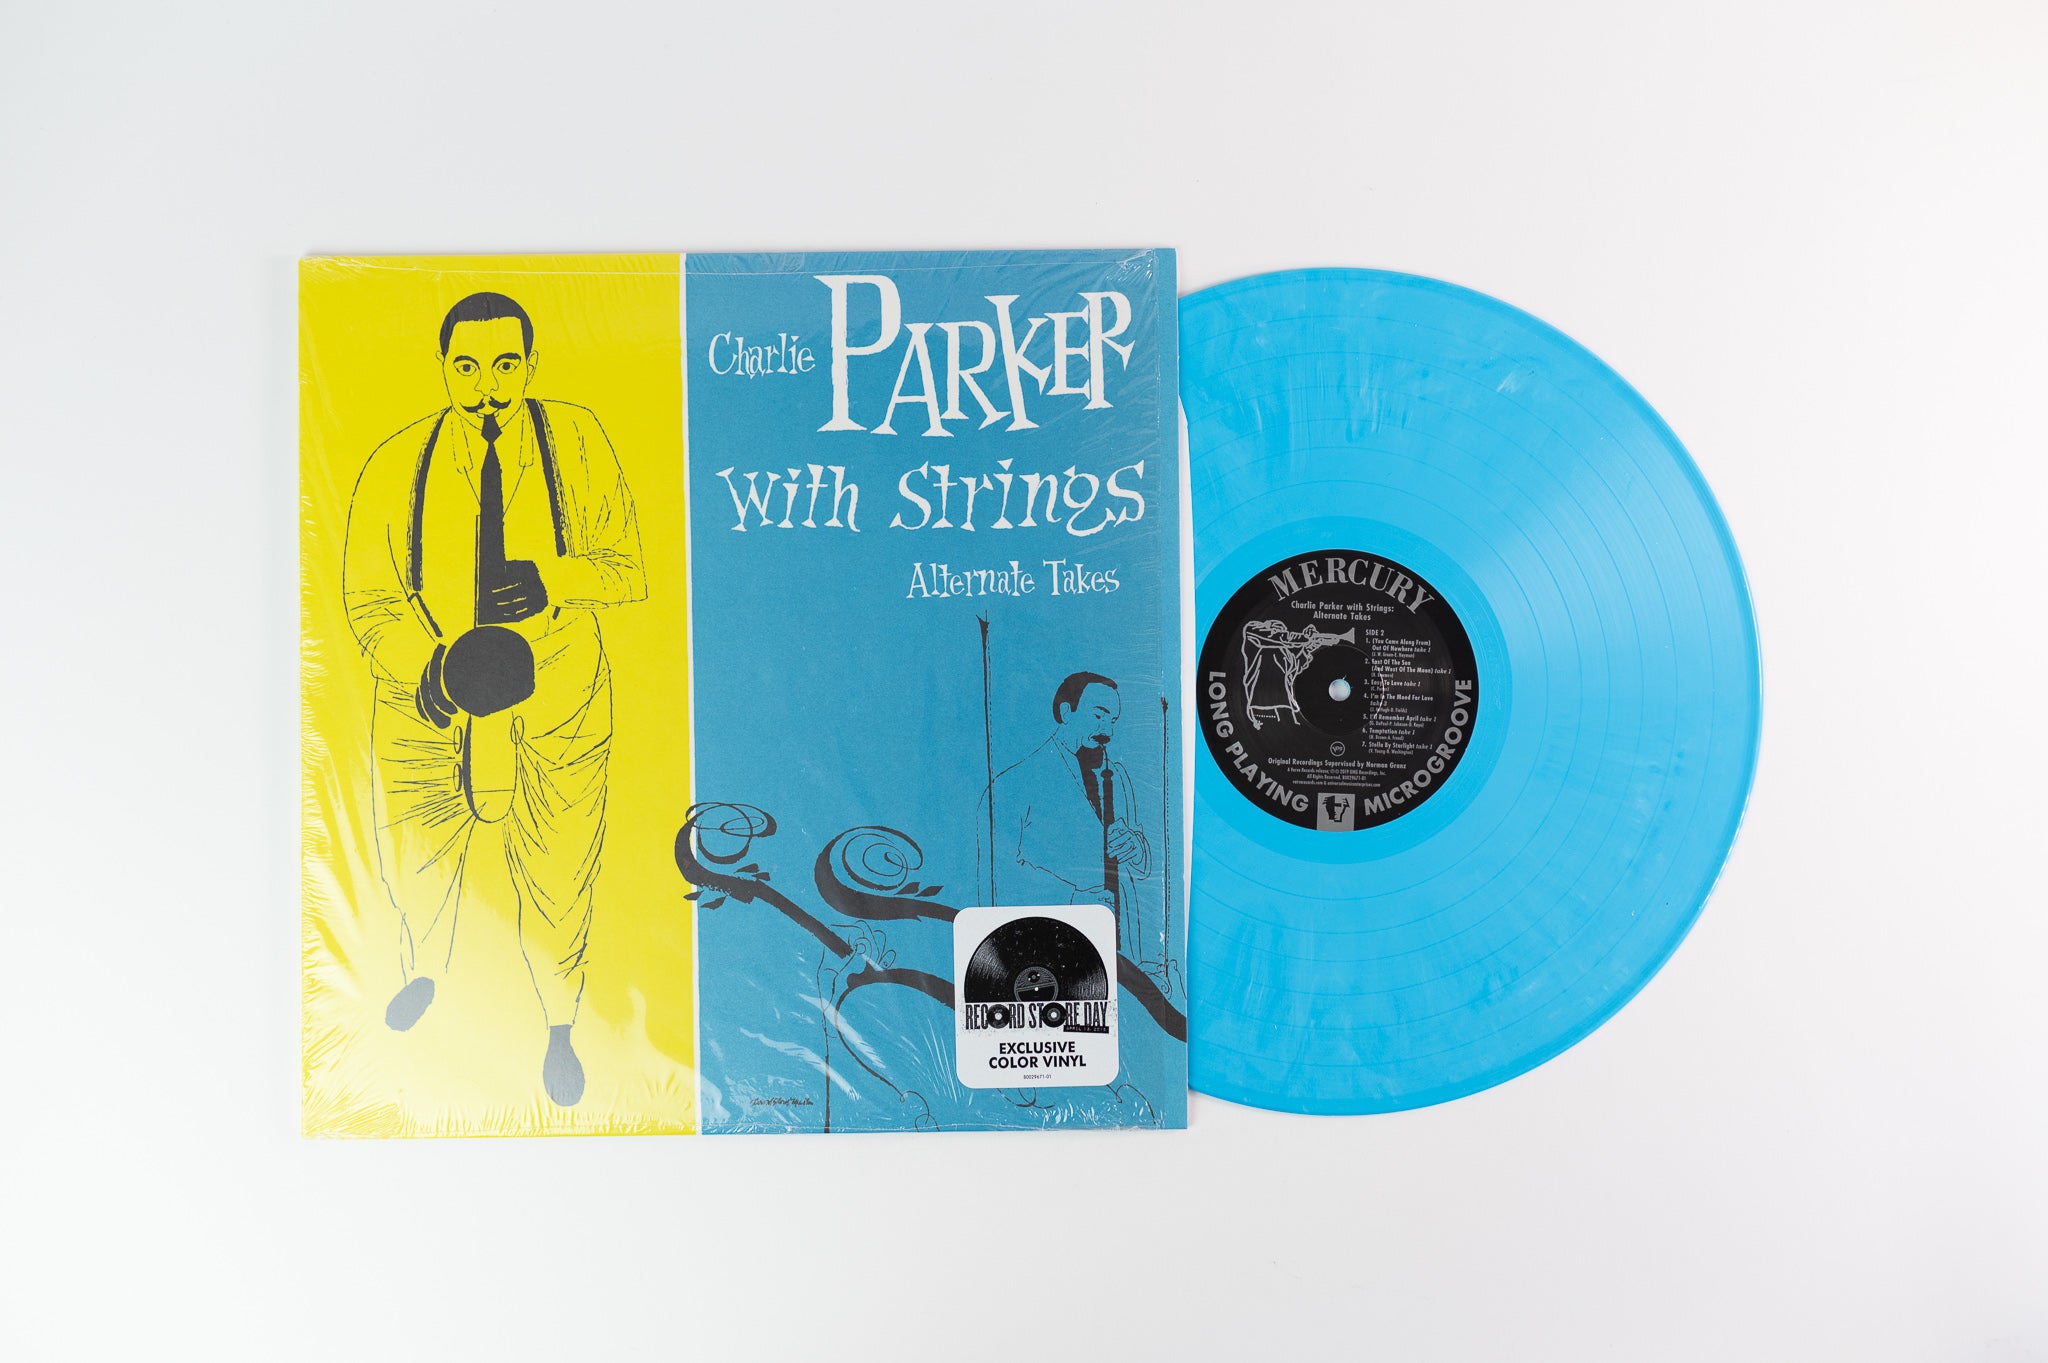 Charlie Parker With Strings - Alternate Takes on Verve RSD Blue Vinyl